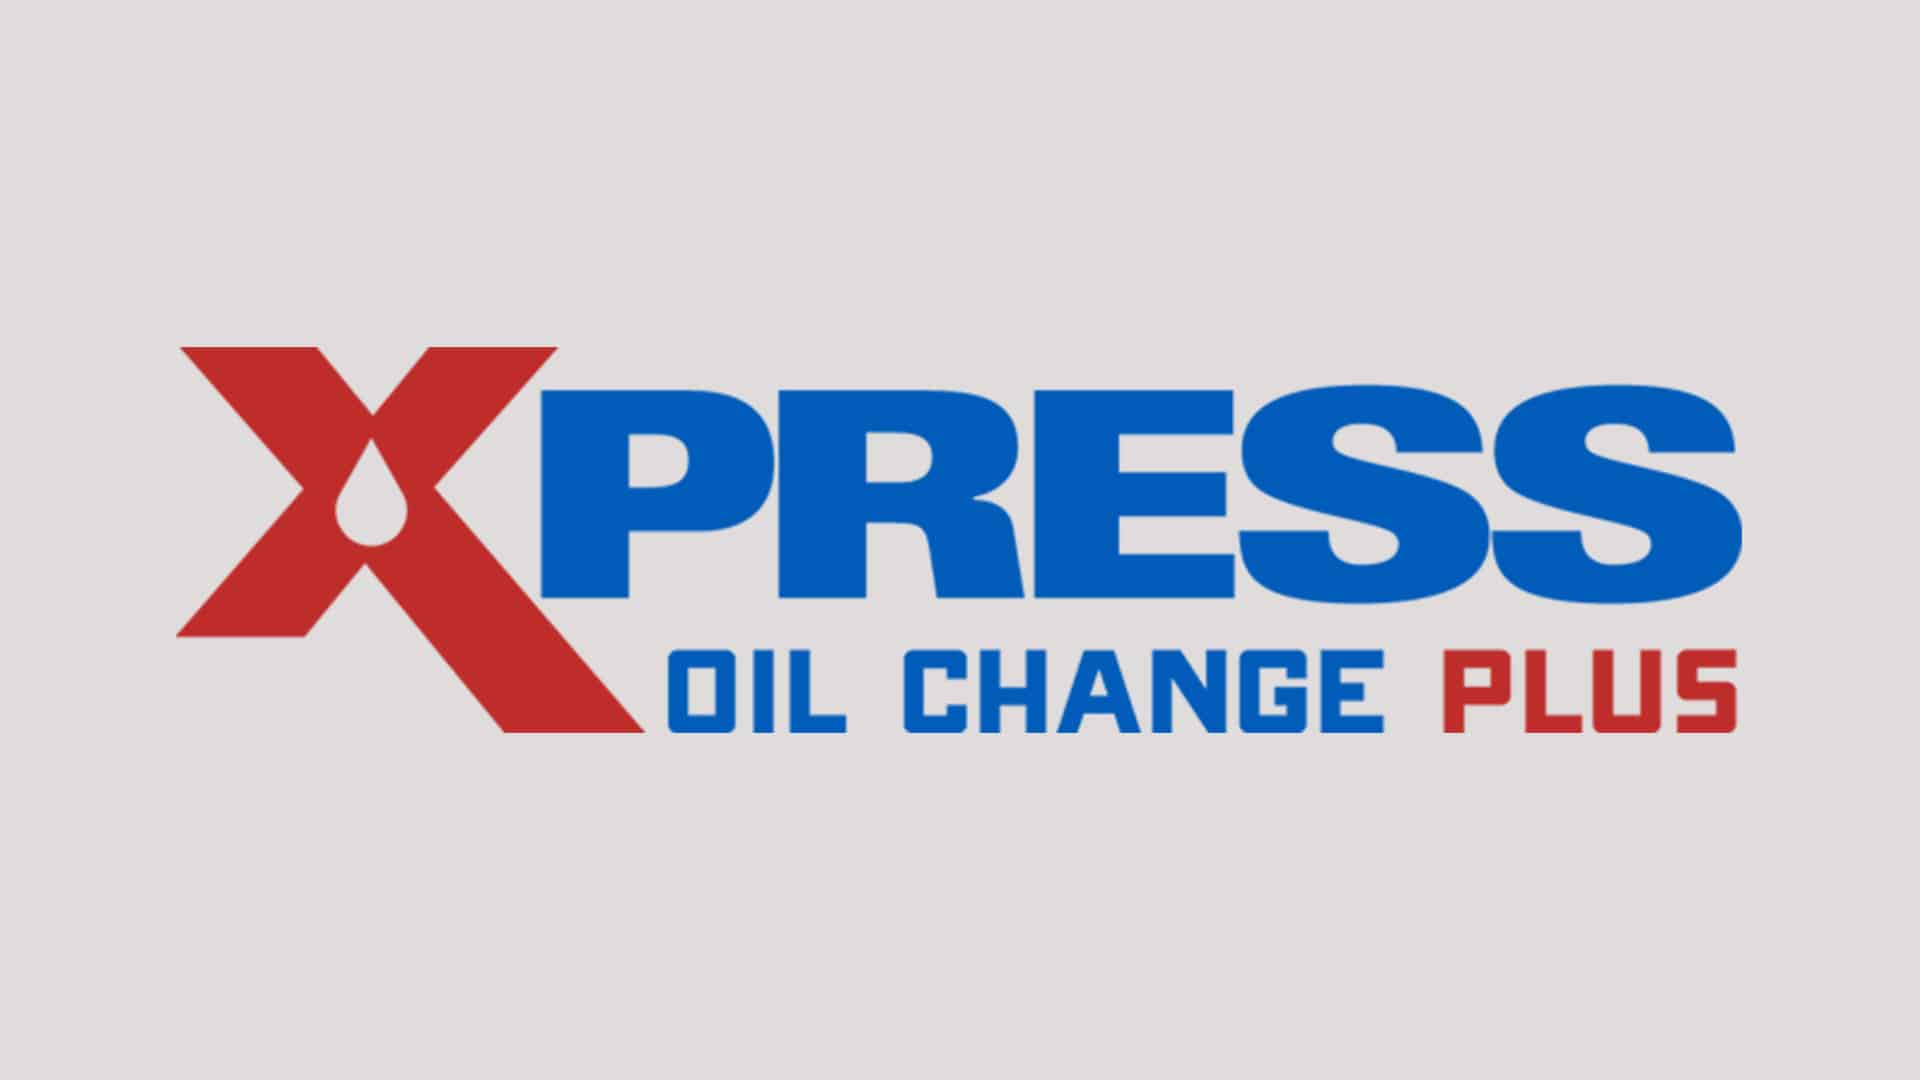 Xpress Oil Change Plus